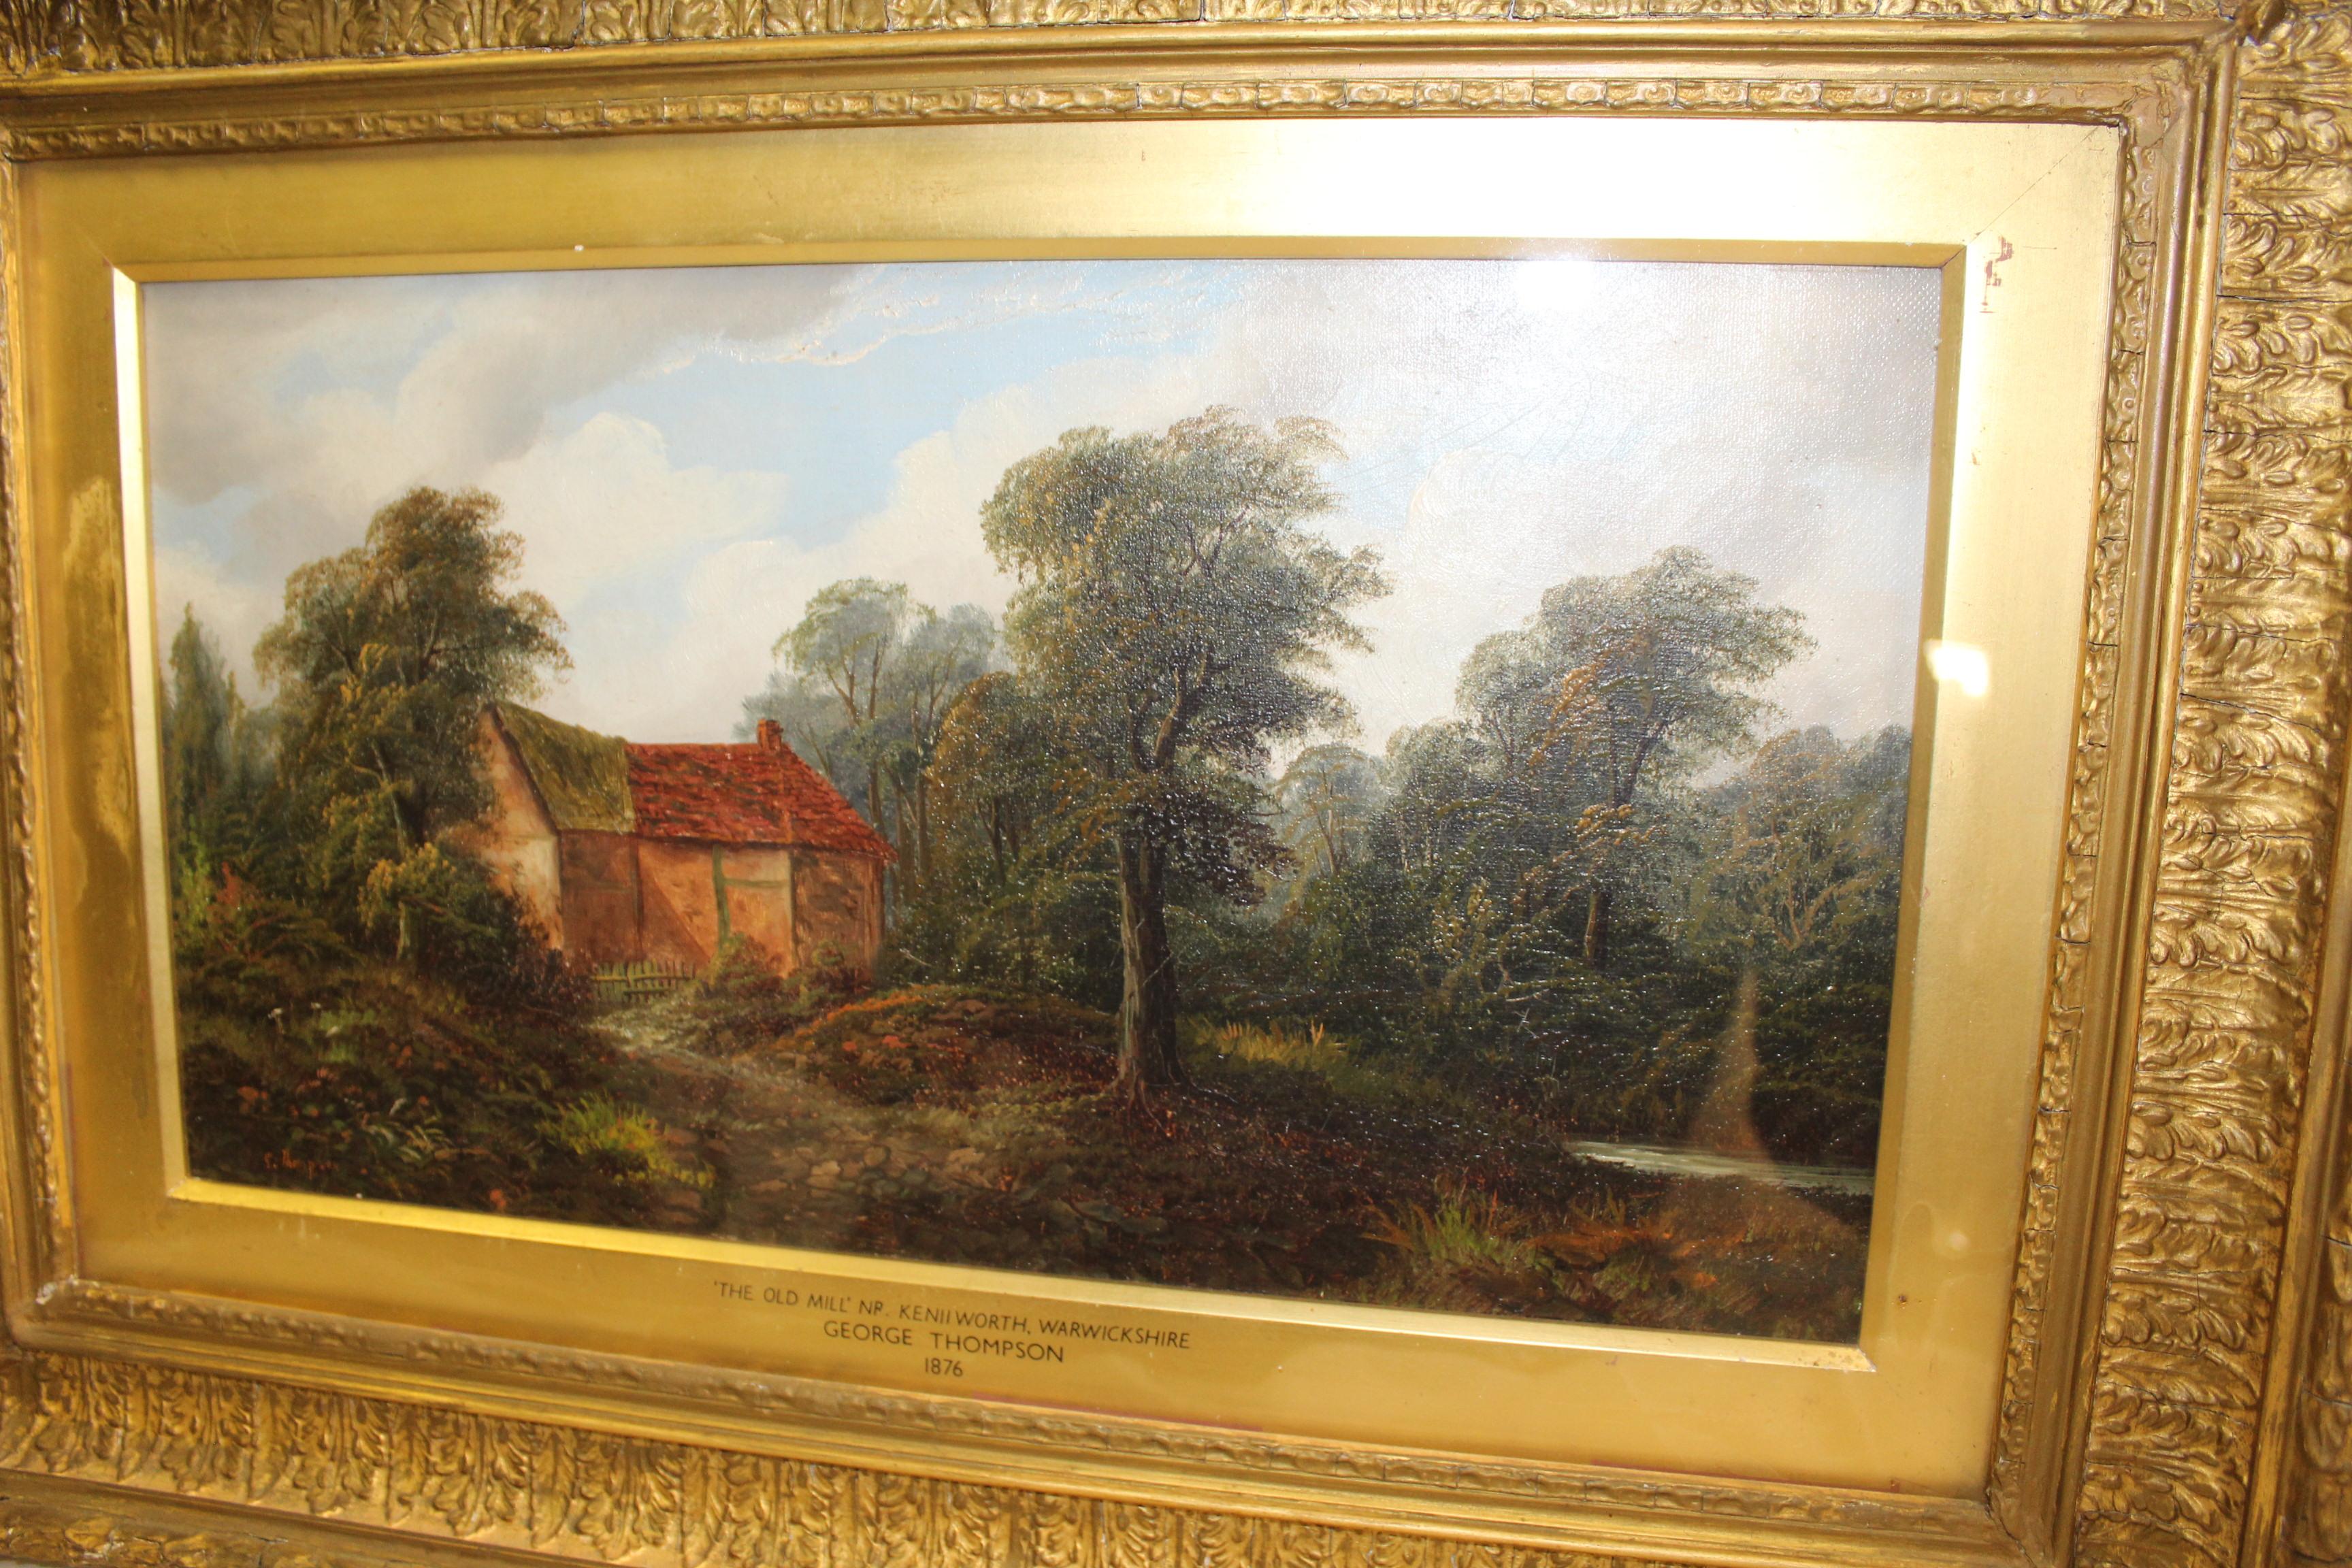 Ein Öl auf Leinwand Gemälde von einer alten Mühle in der englischen Landschaft in der Nähe von Keniworth. Von einem bekannten englischen Ölmaler der damaligen Zeit.  Der Rahmen ist original mit Rissen und kleinen fehlenden Teilen. Das Gemälde ist